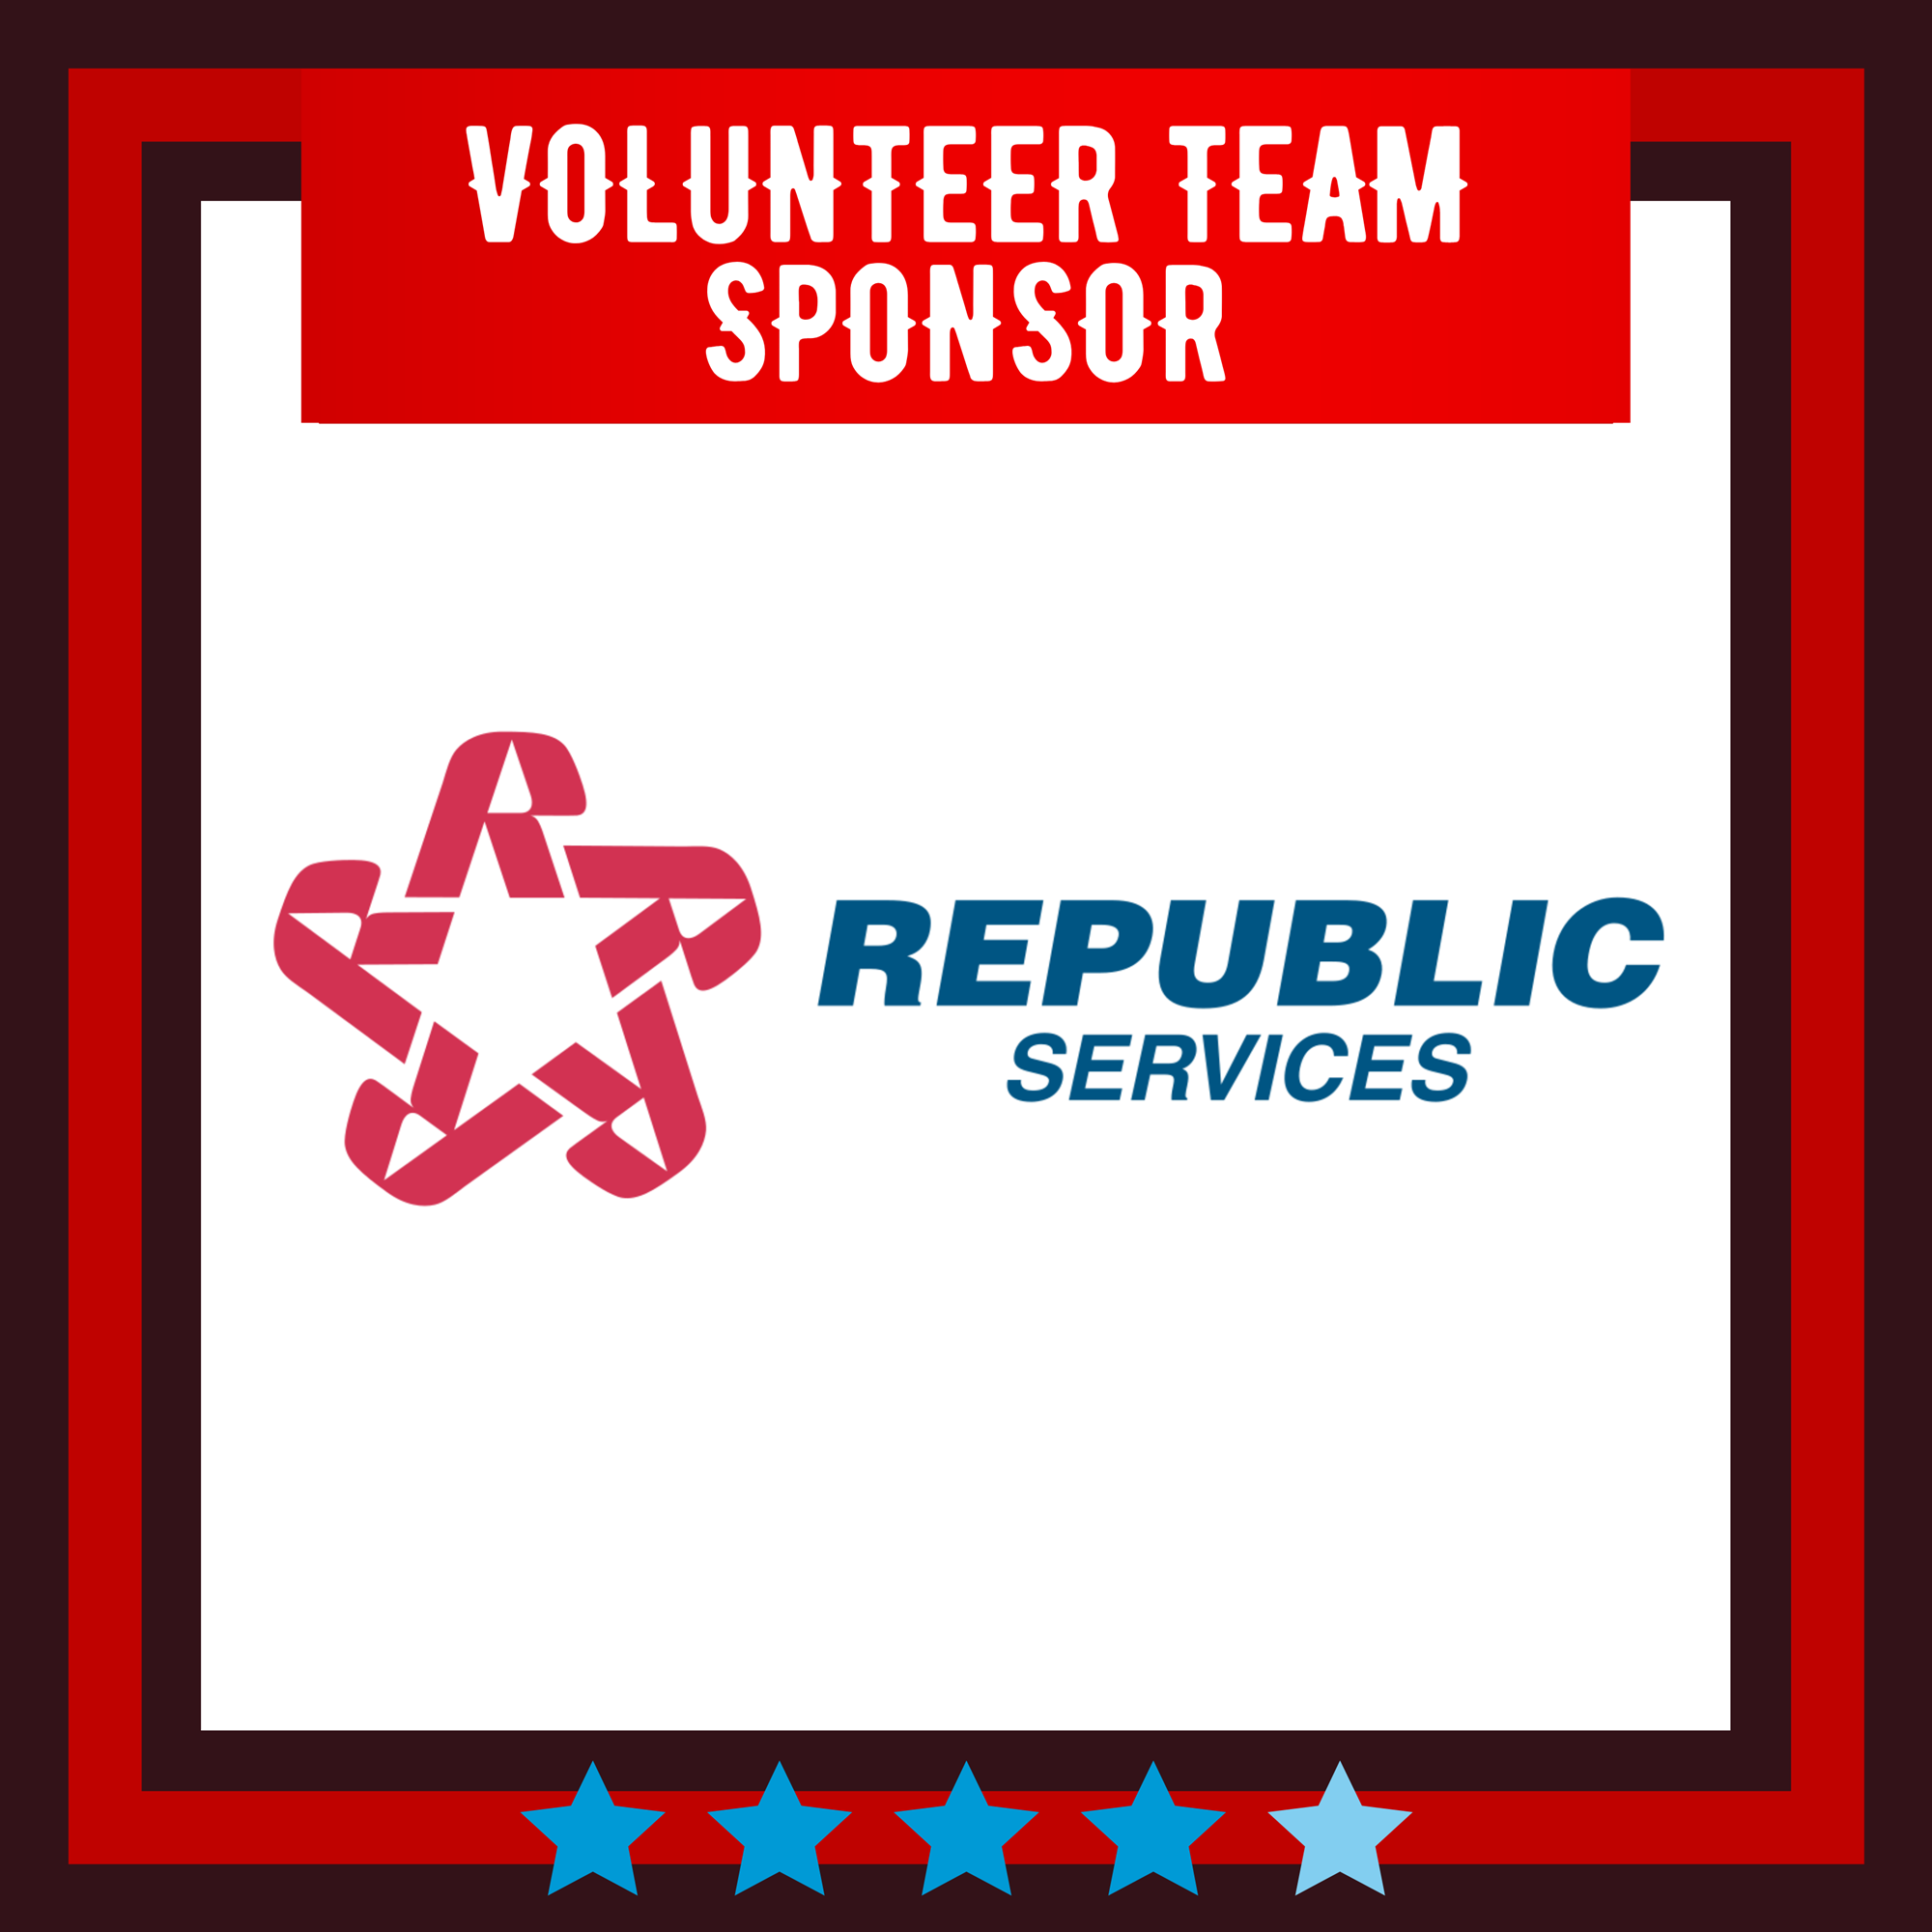 Volunteer Team Sponsor: Republic Services